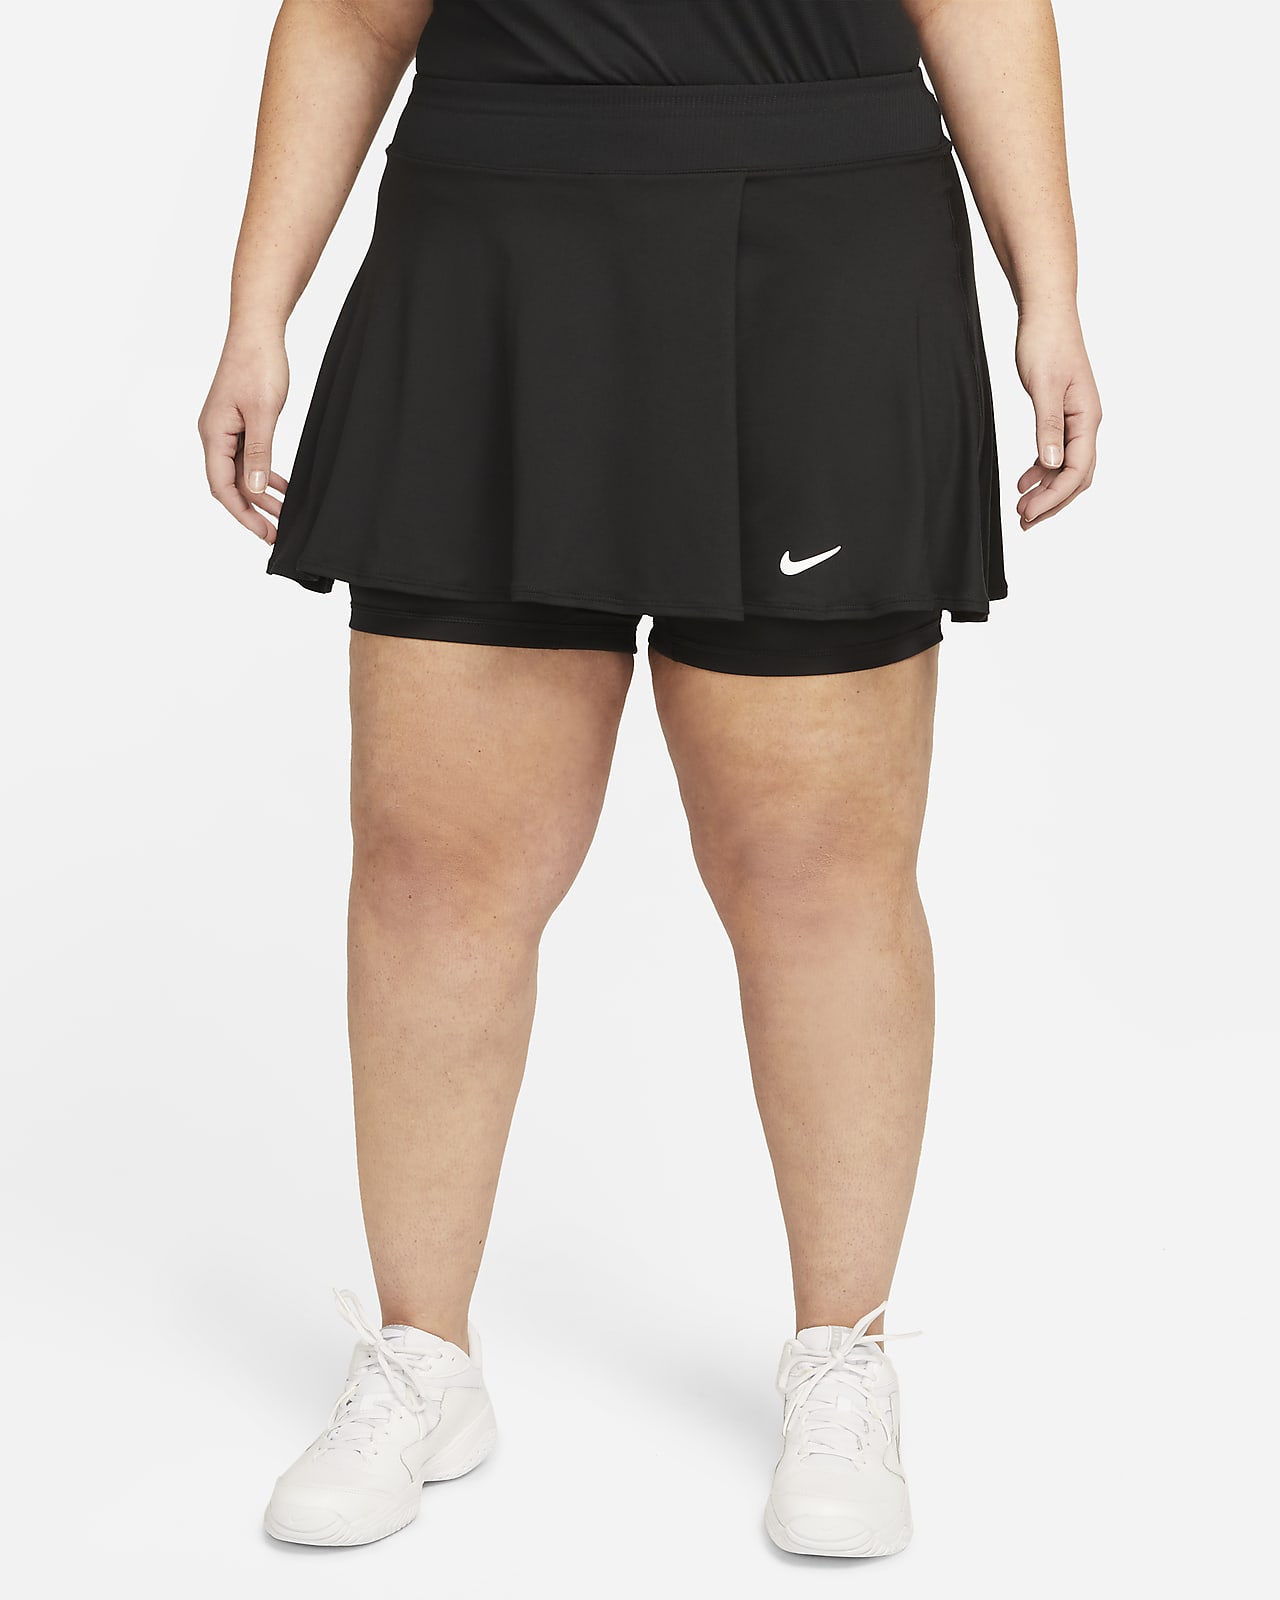 Γυναικεία φούστα τένις με αέρινη σχεδίαση NikeCourt Dri-FIT Victory (μεγάλα μεγέθη)